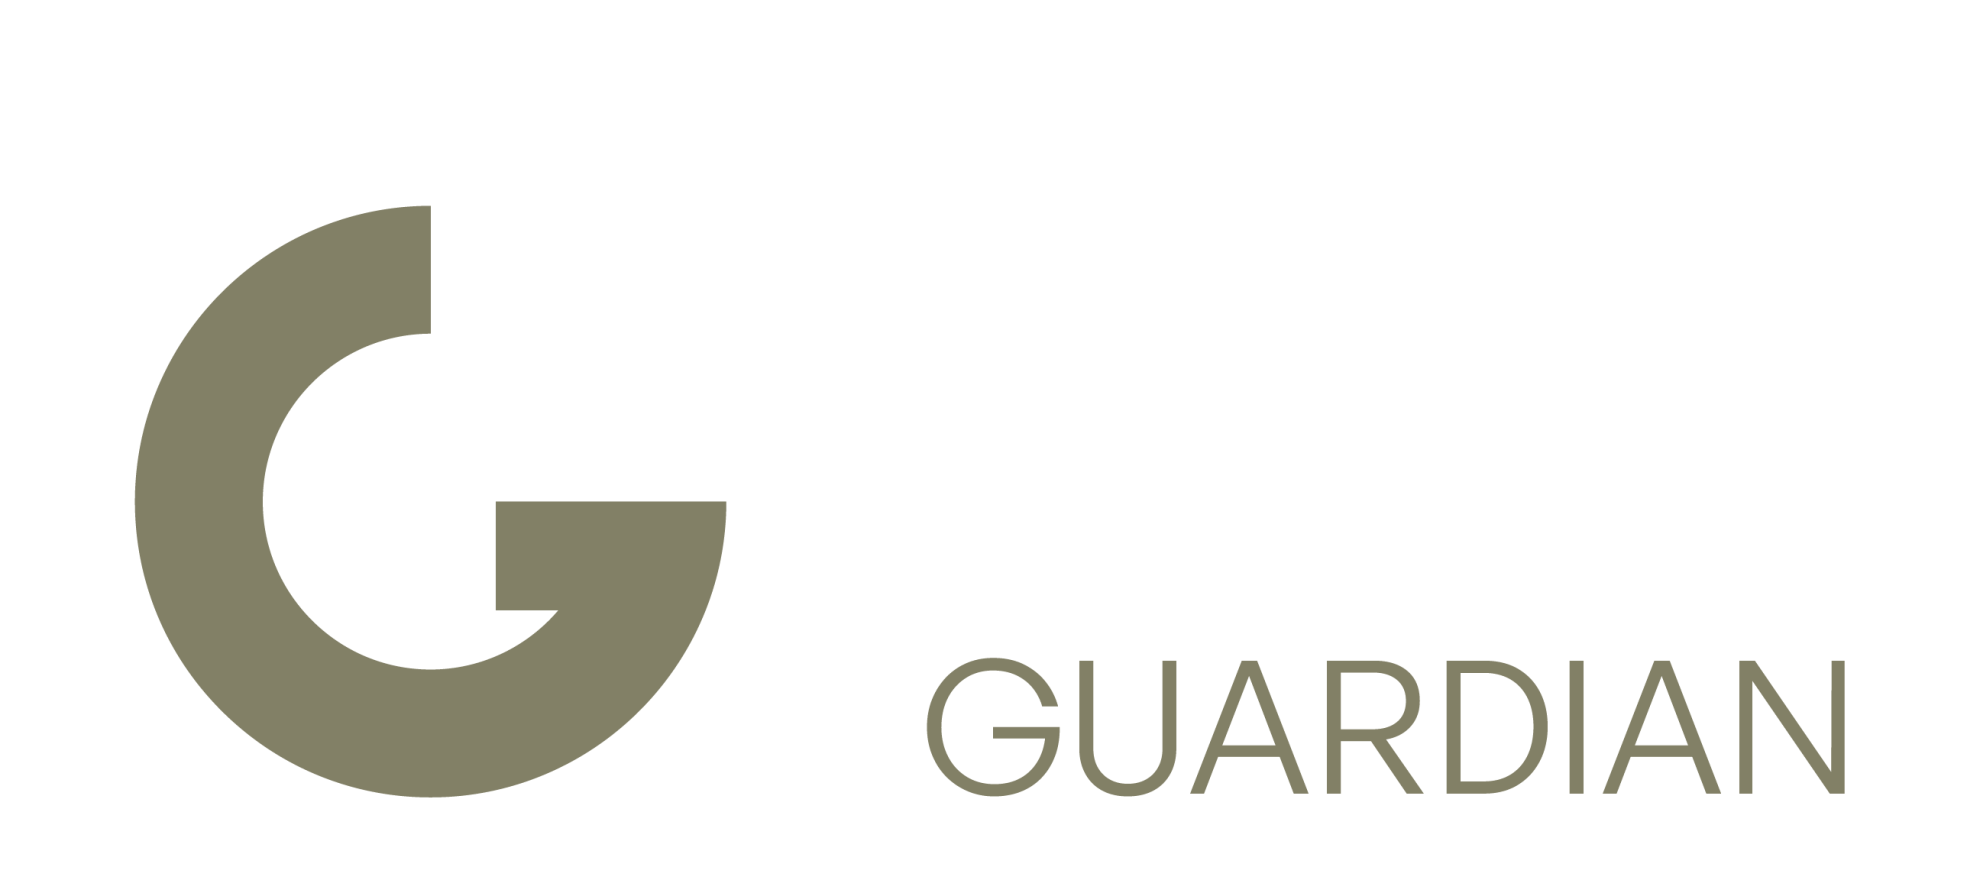 Richter guardian logo